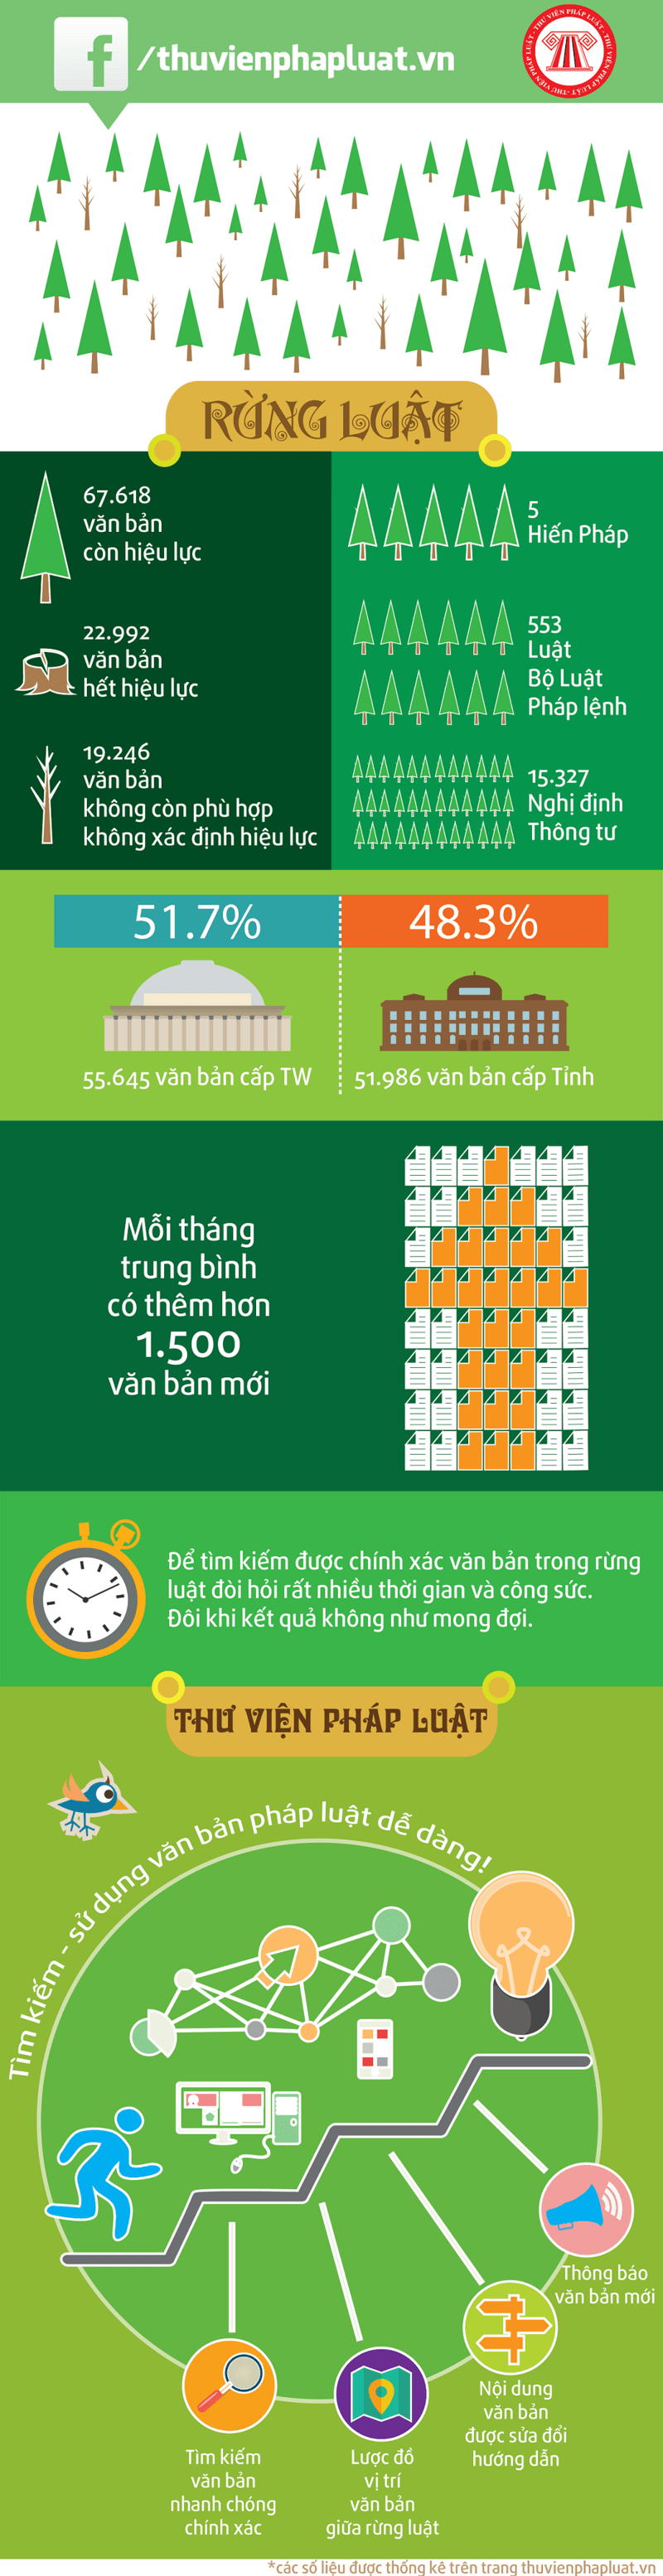 Luật ở Việt Nam và Những thống kê